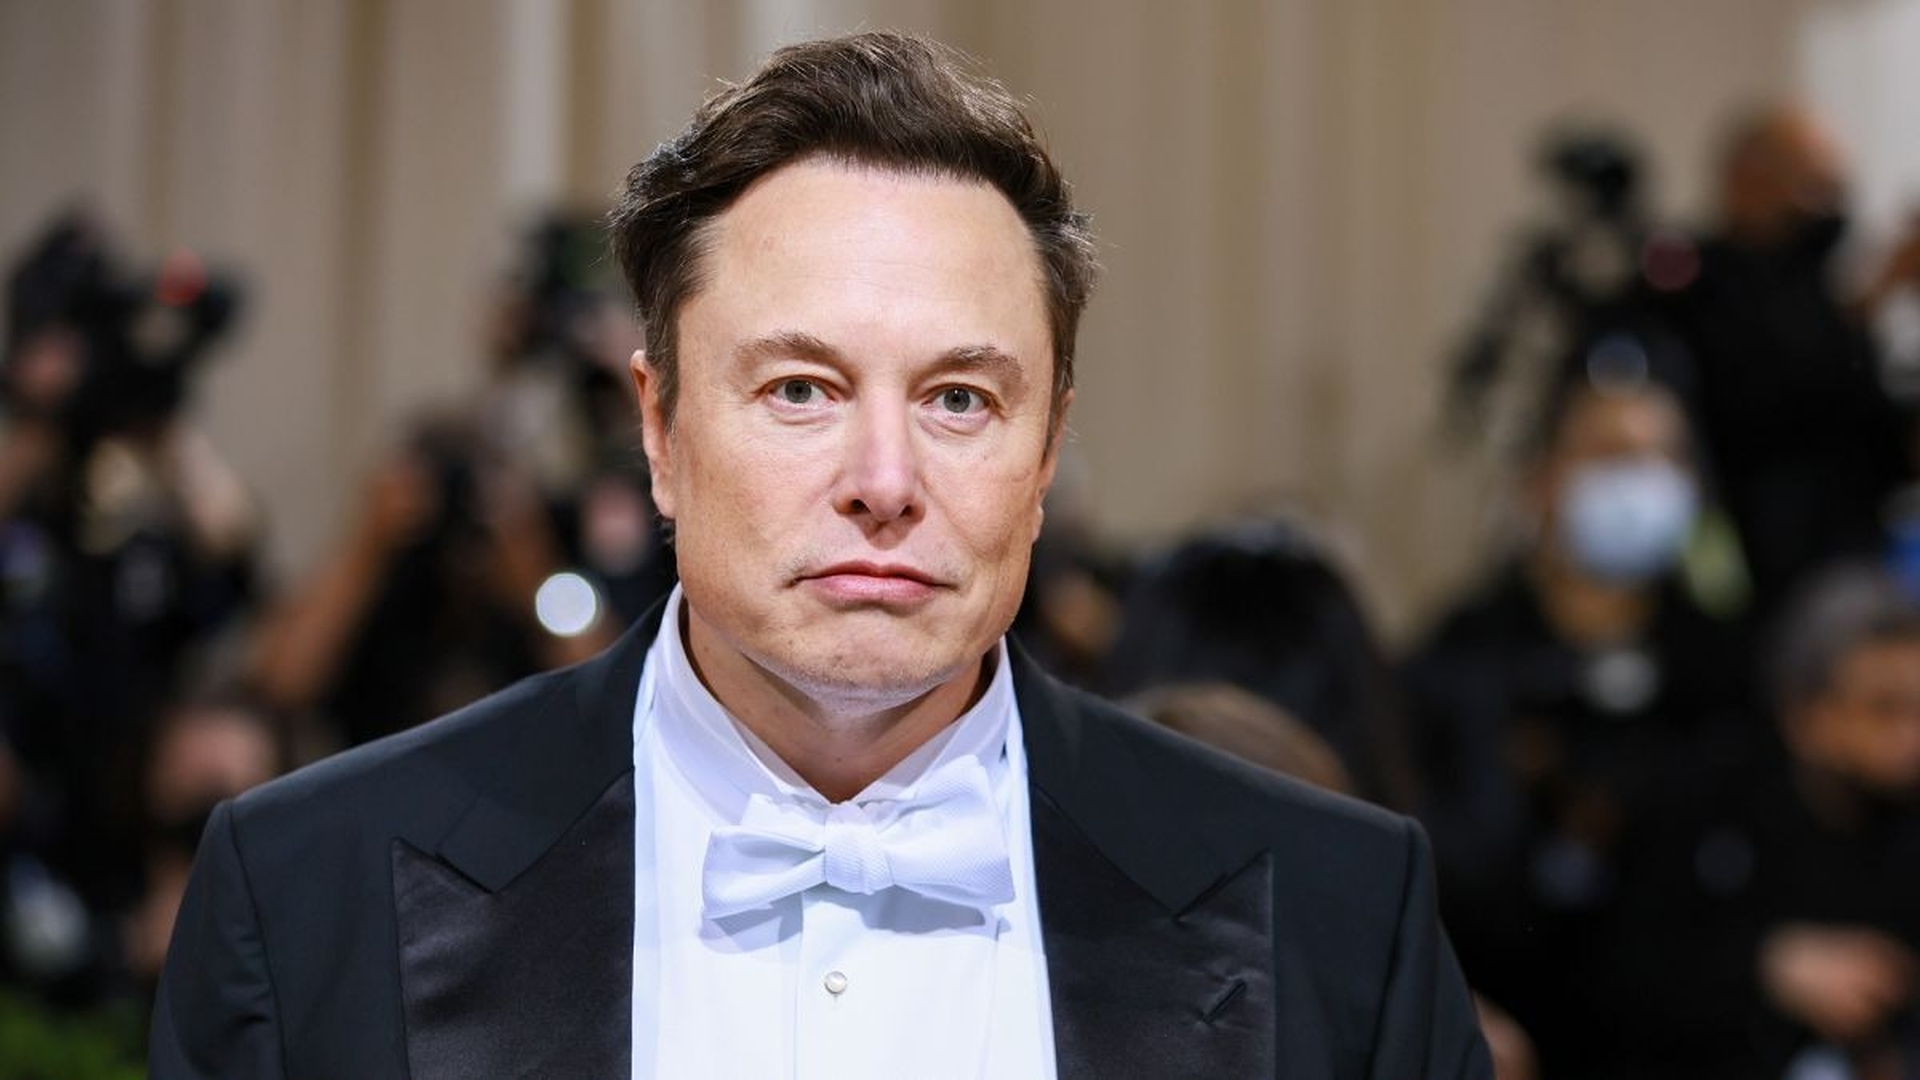 Dans cet article, nous allons couvrir l'actionnaire de Twitter qui poursuit Elon Musk au motif que le PDG de Tesla a manipulé les actions de Twitter à des fins personnelles.